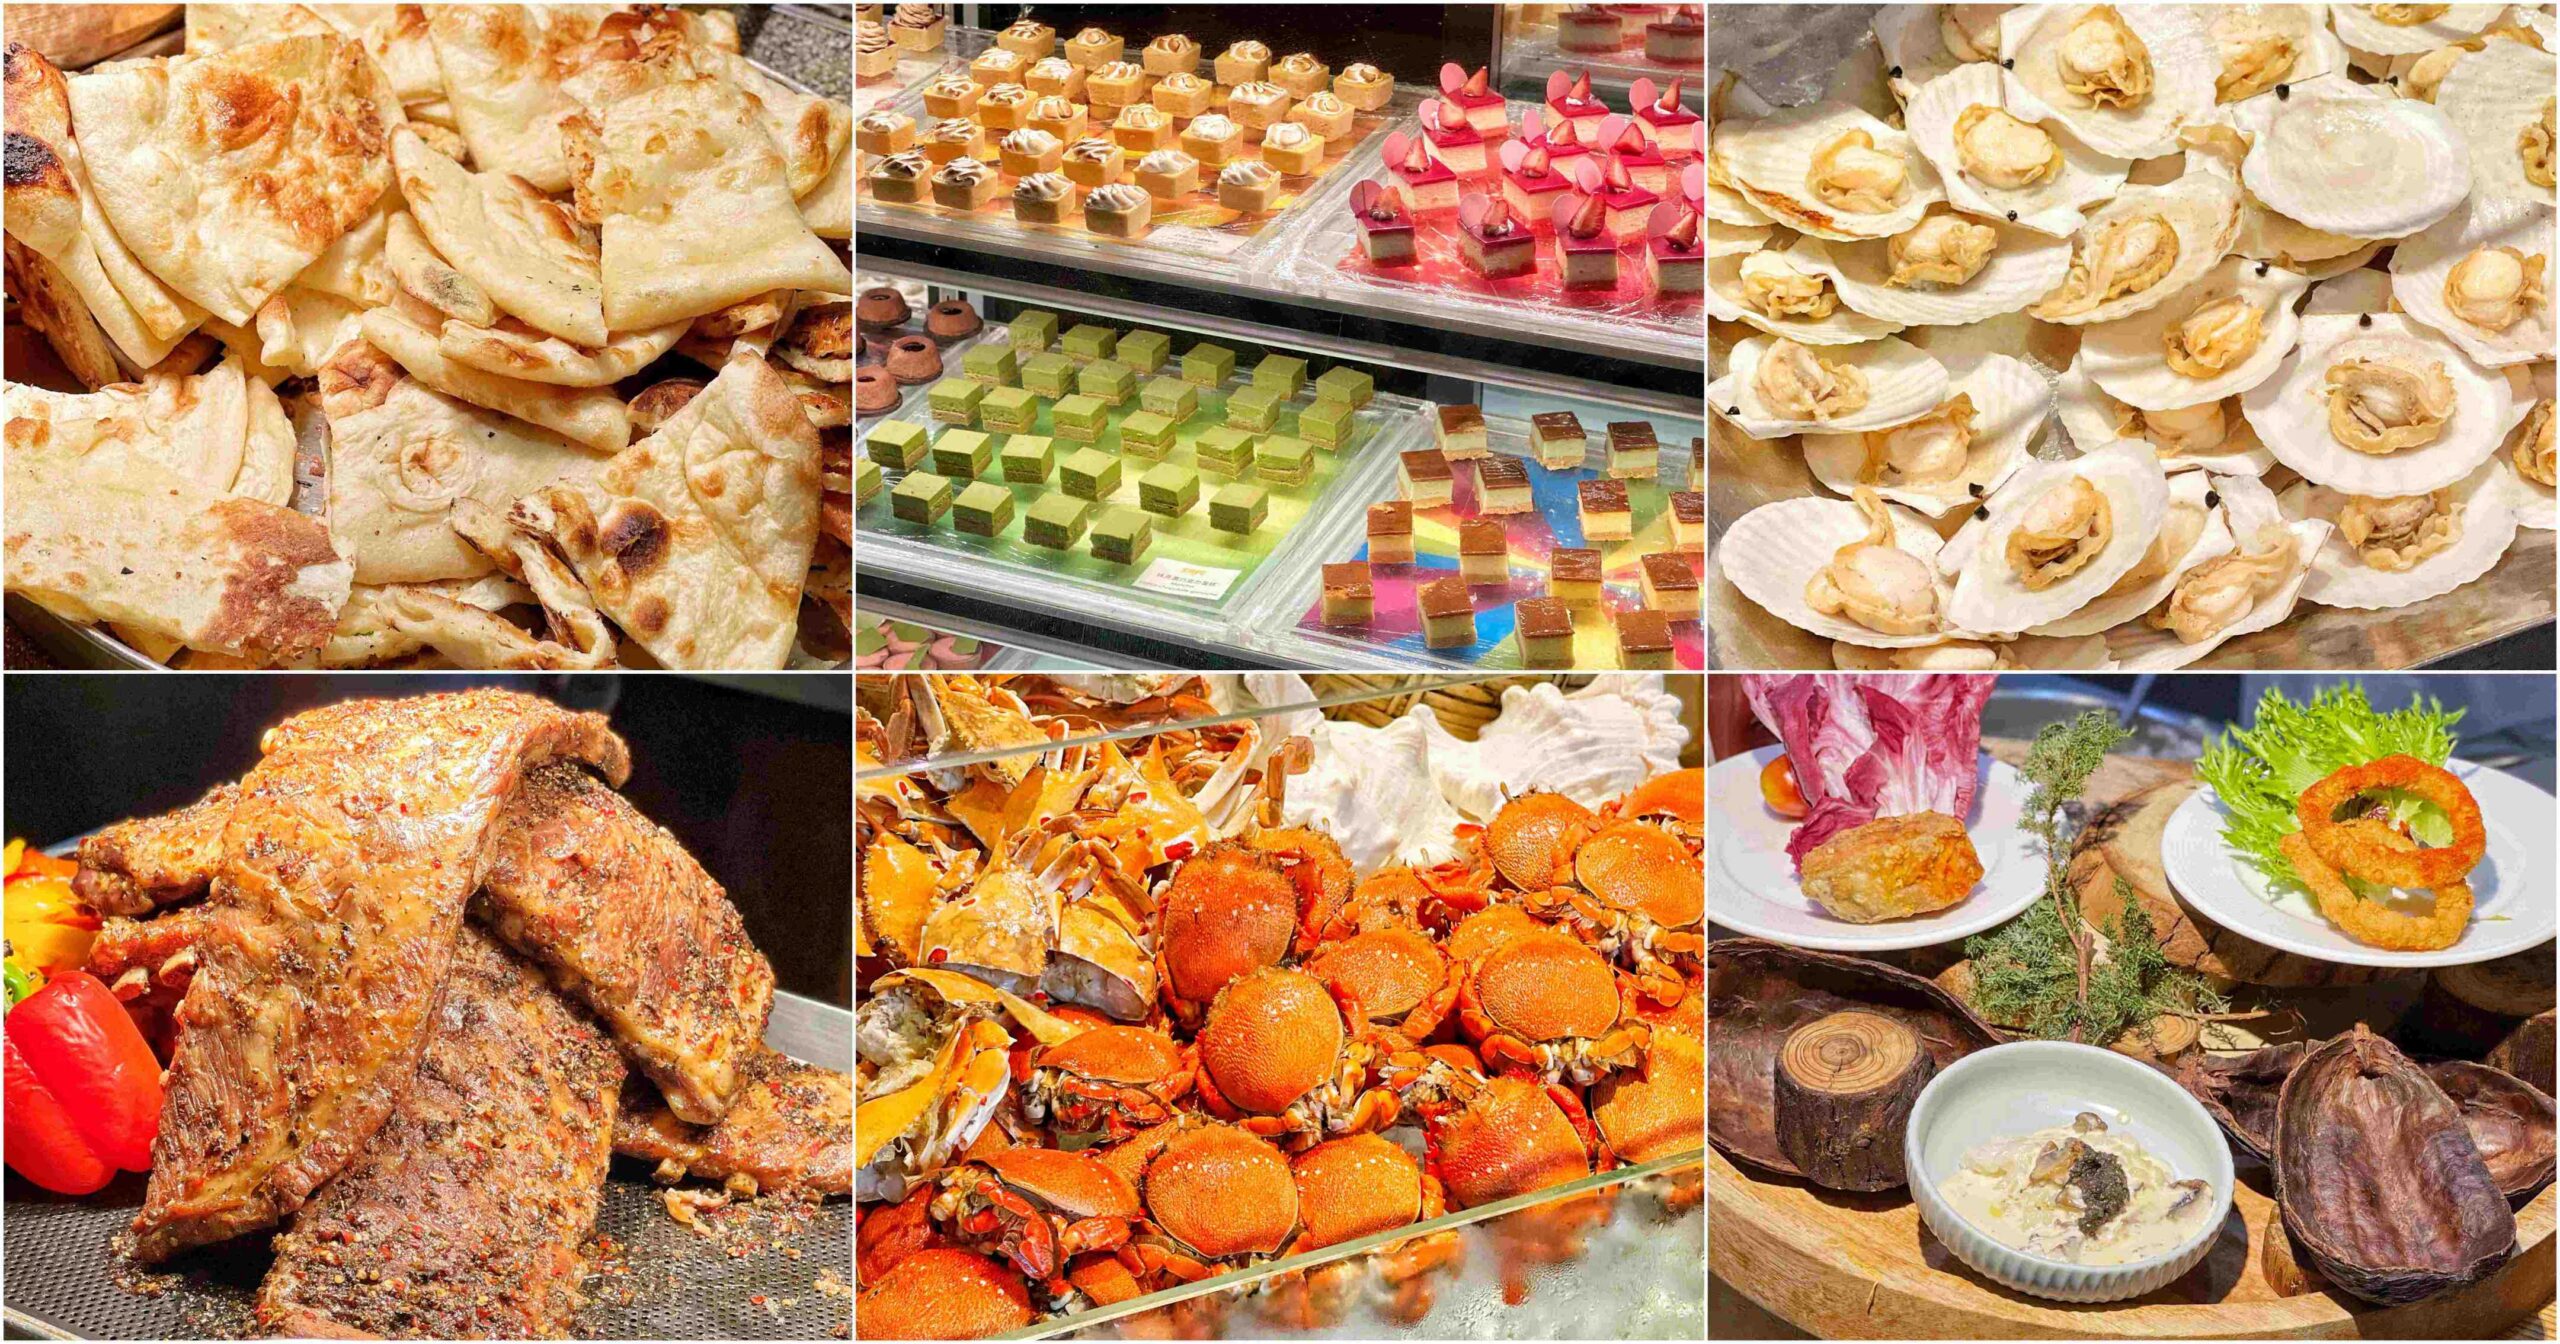 菜色選擇多達200多種，印度烤餅、黑松露燉飯、港式料理尤其強！ @大食女 in Wonderland